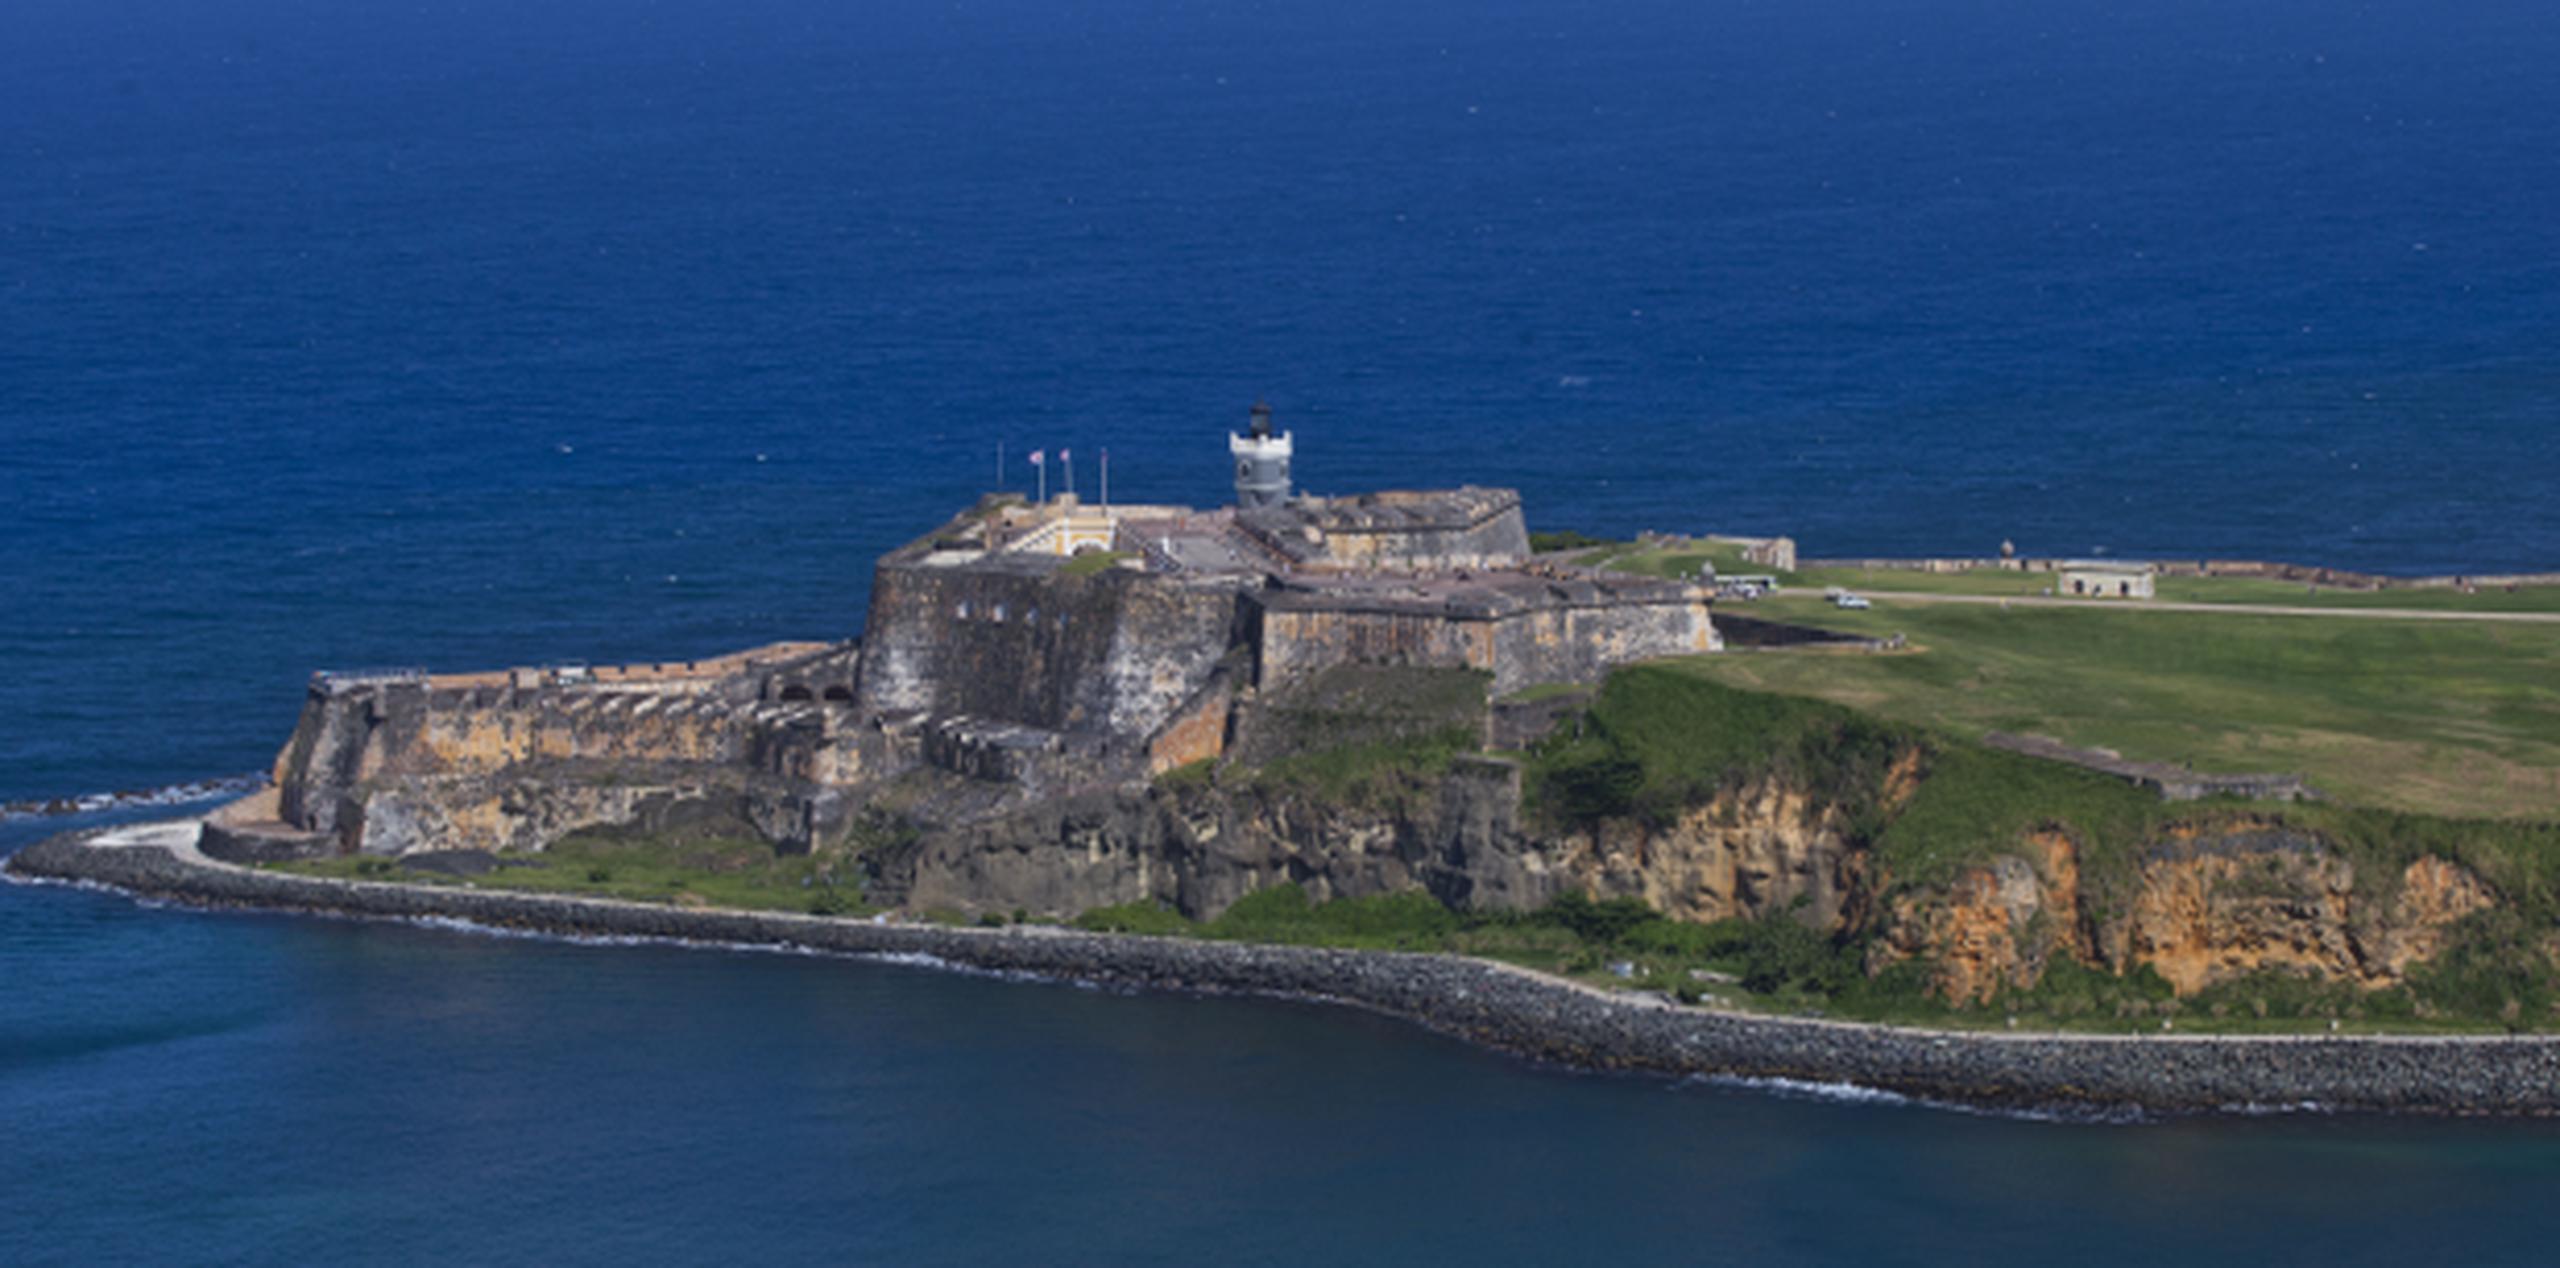 El San Juan National Historic Site está compuesto por el Castillo San Felipe del Morro, el Castillo San Cristóbal, el Fuerte de San Juan de La Cruz (El Cañuelo), Puerta de San Juan, y la mayor parte de la muralla de la ciudad. (Archivo)